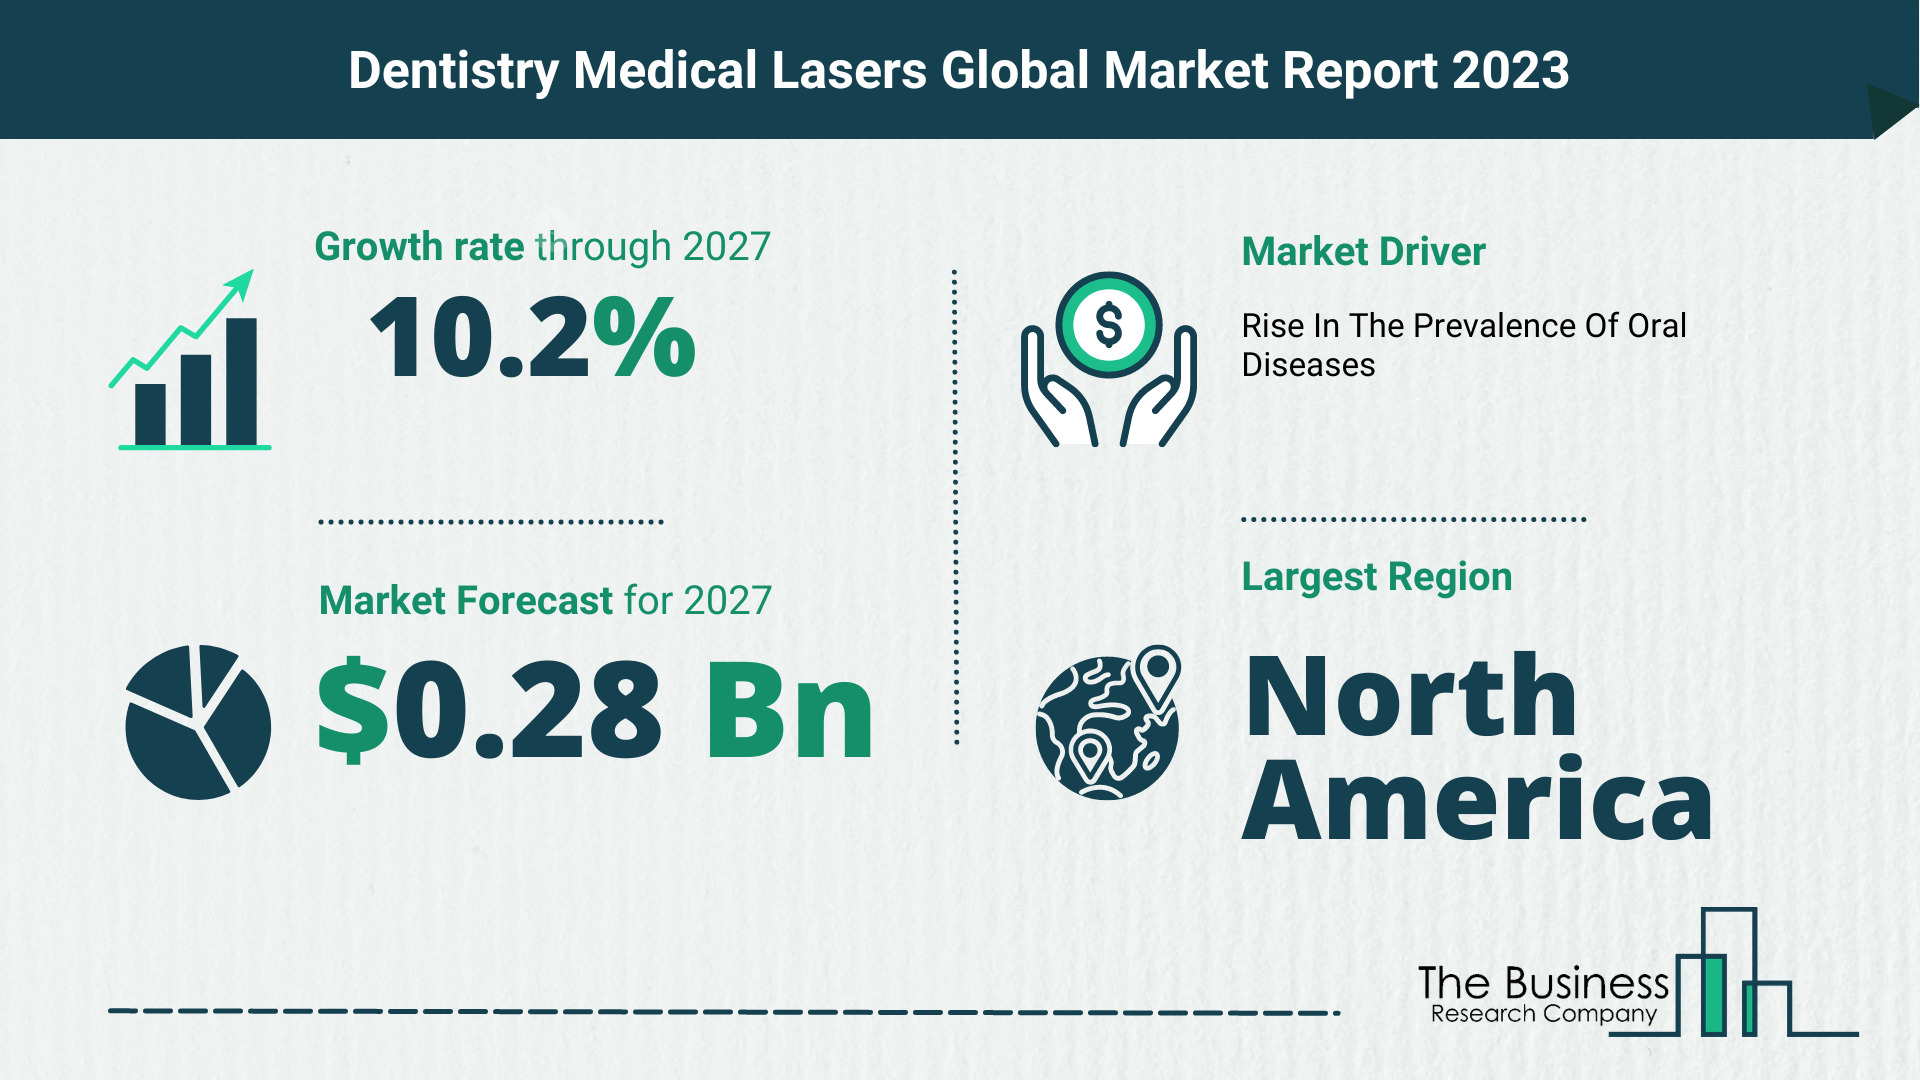 Global Dentistry Medical Lasers Market